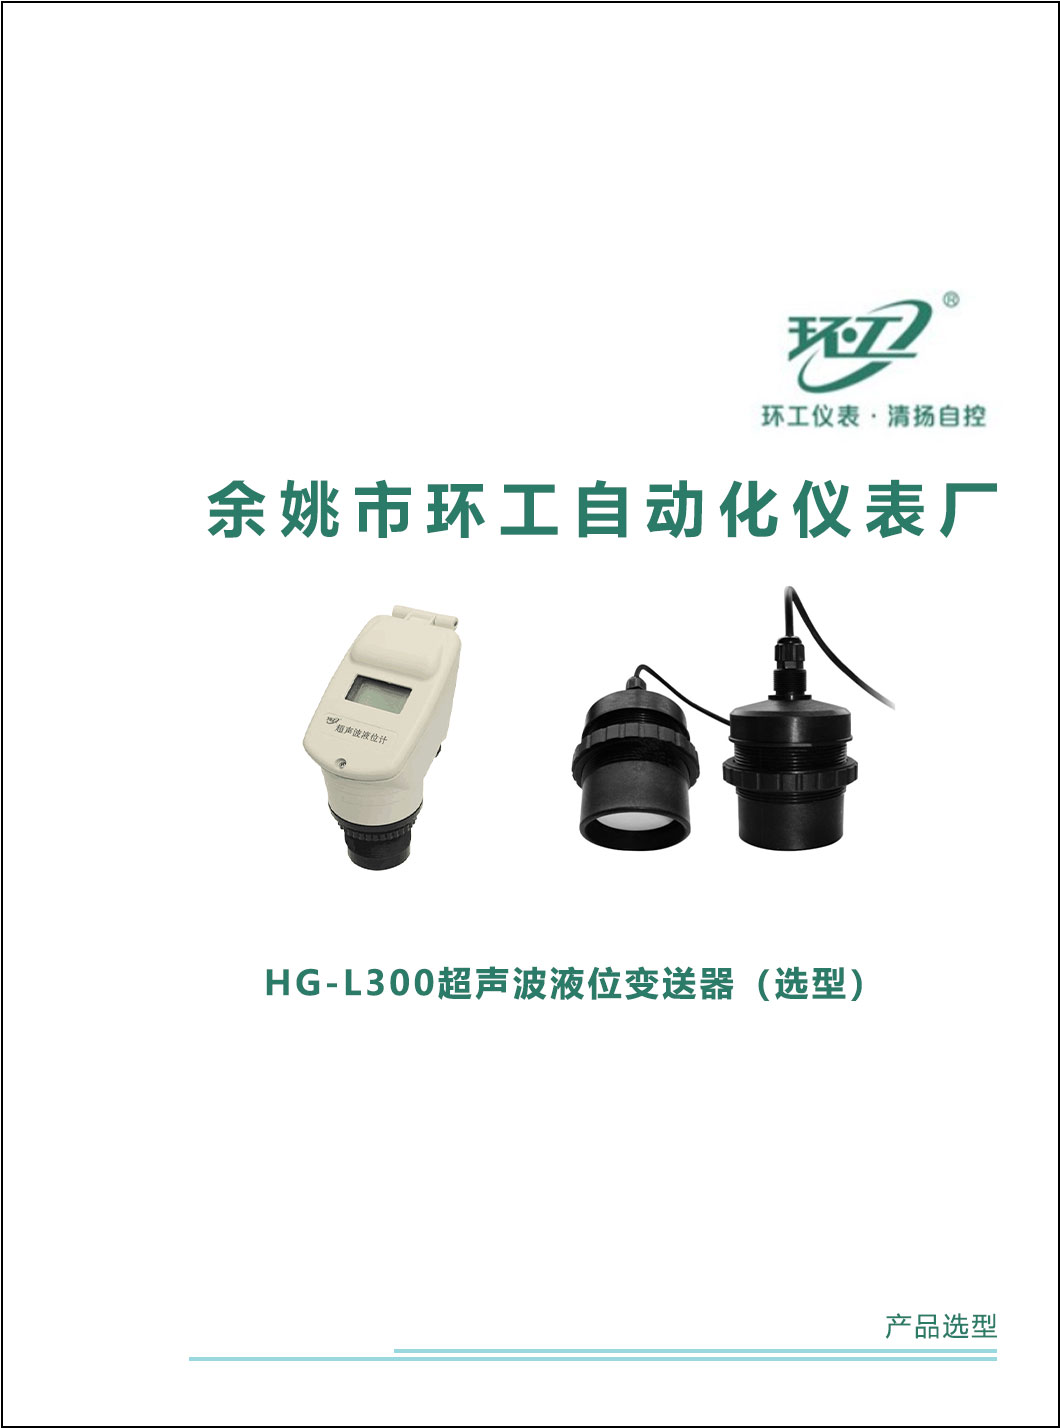 HG-L300超声波液位变送器-环工仪表-清扬自控-选型